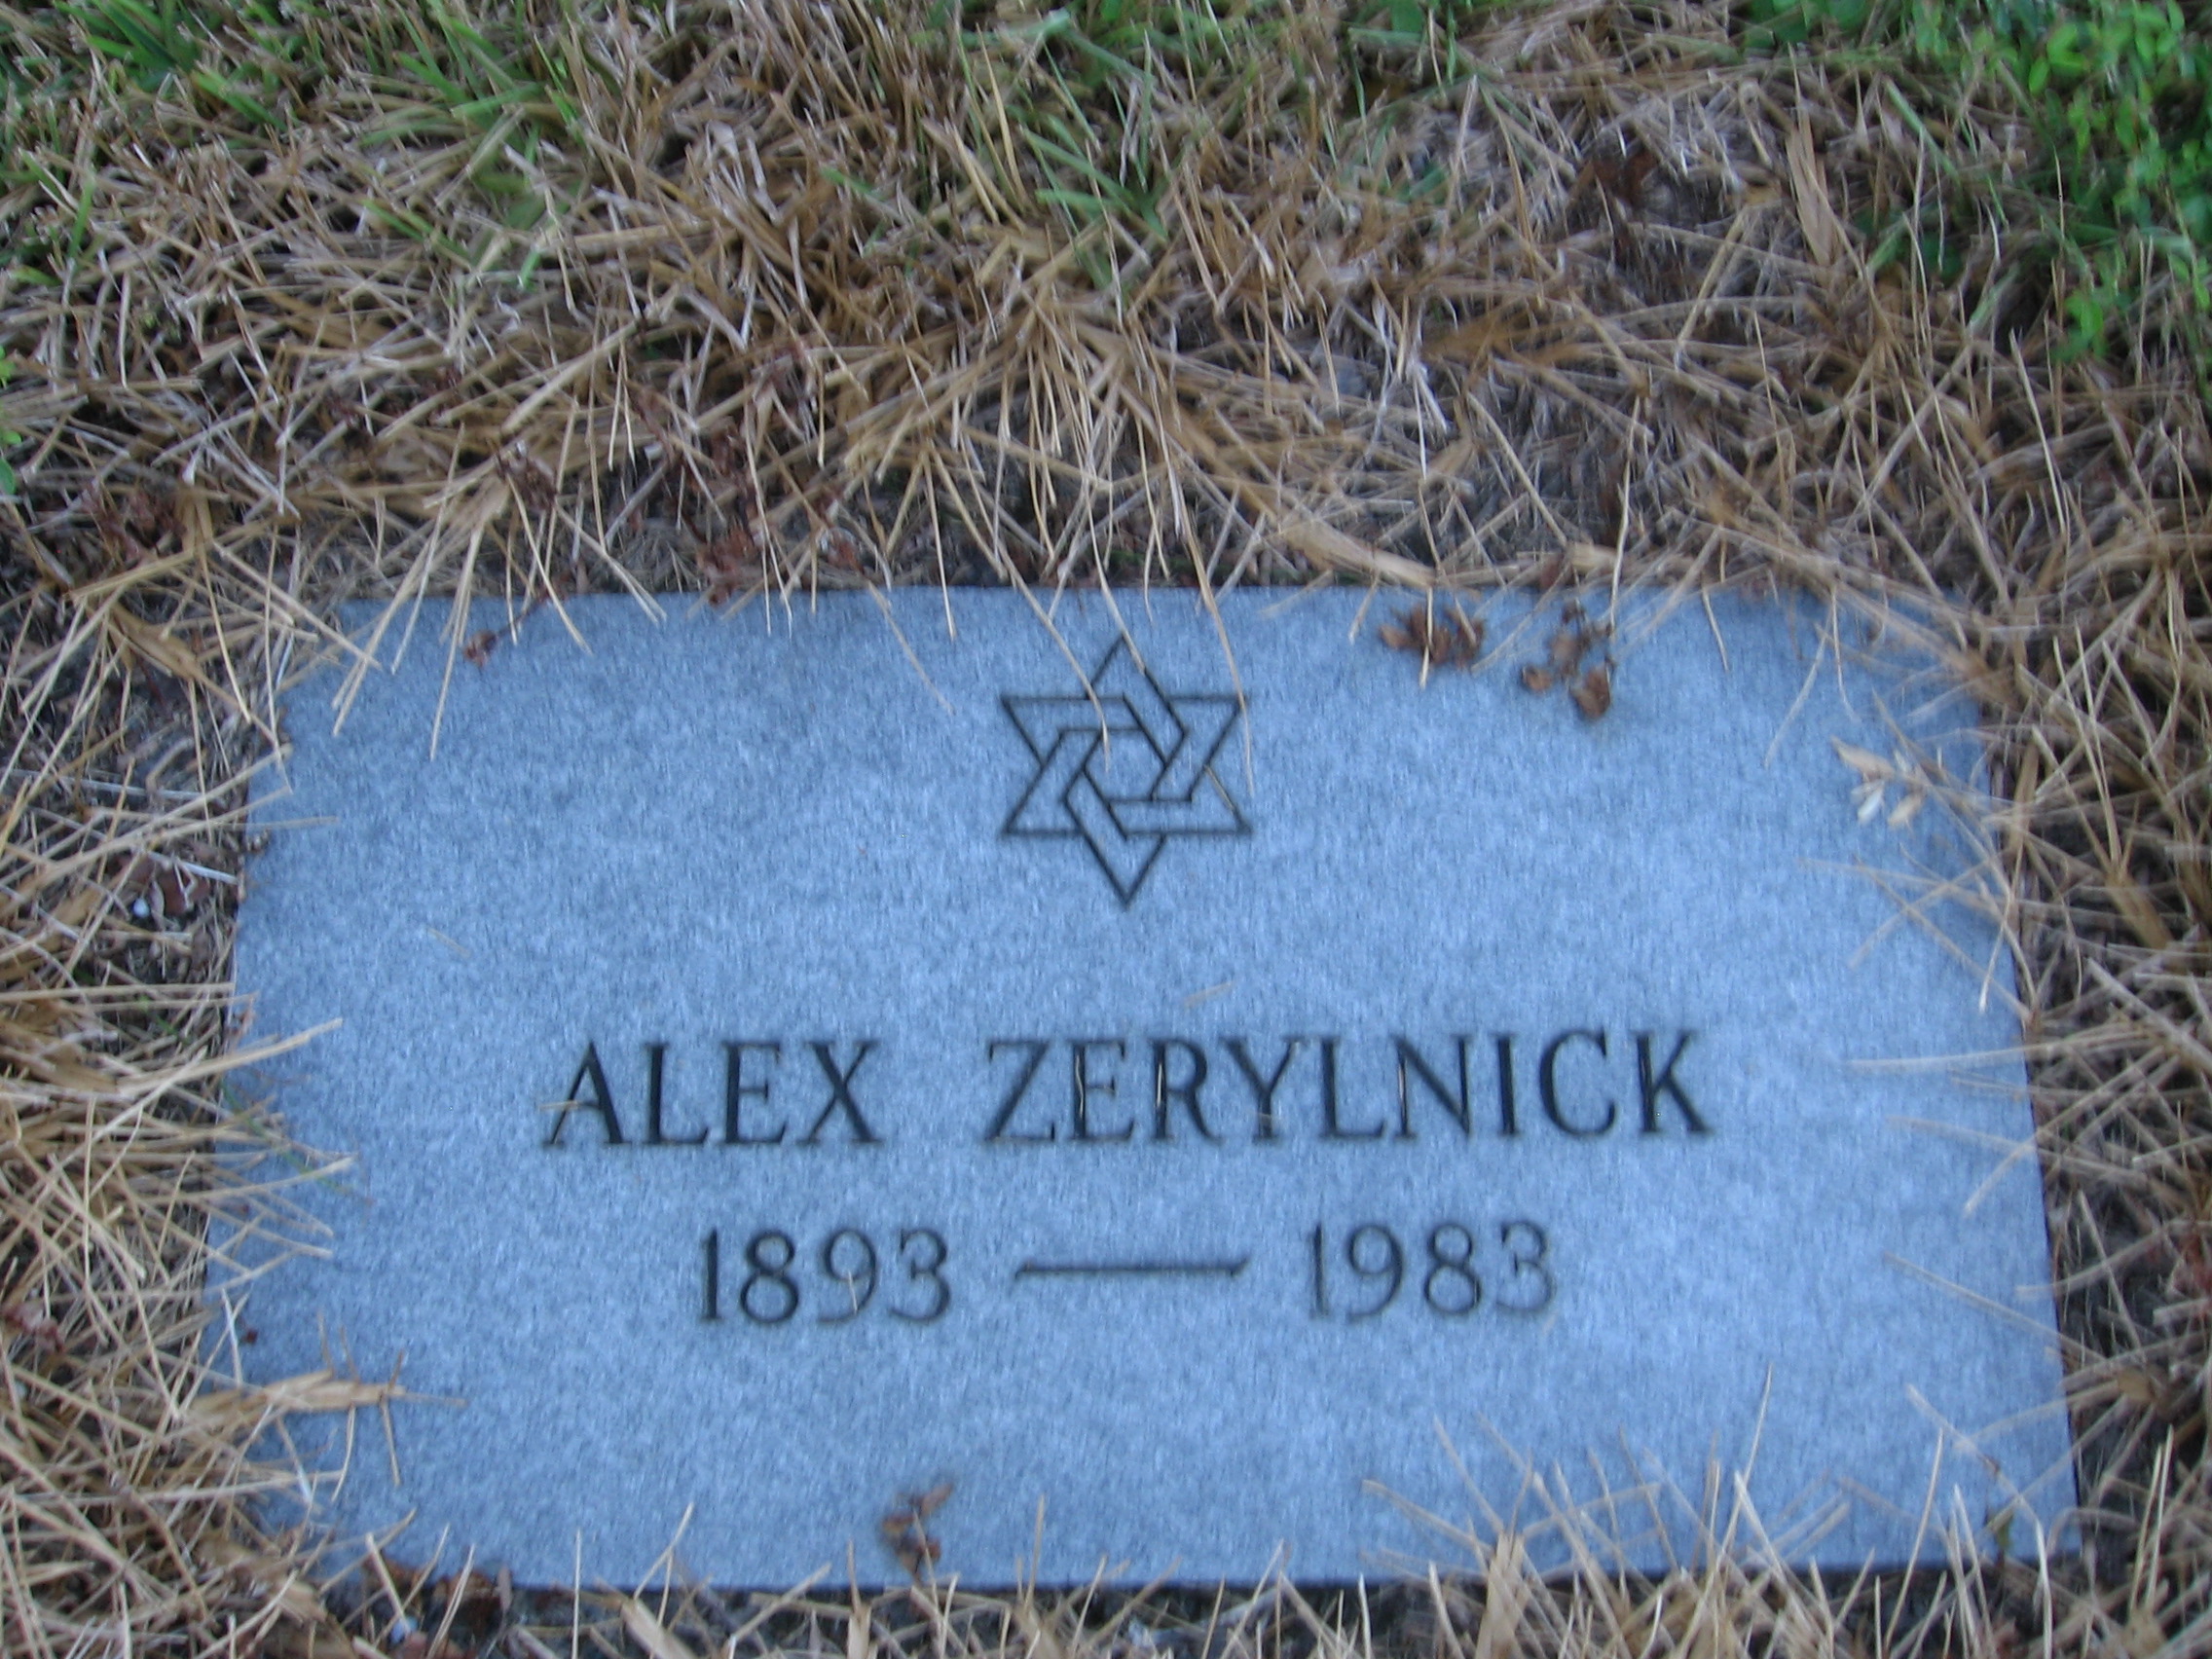 Alex Zerylnick